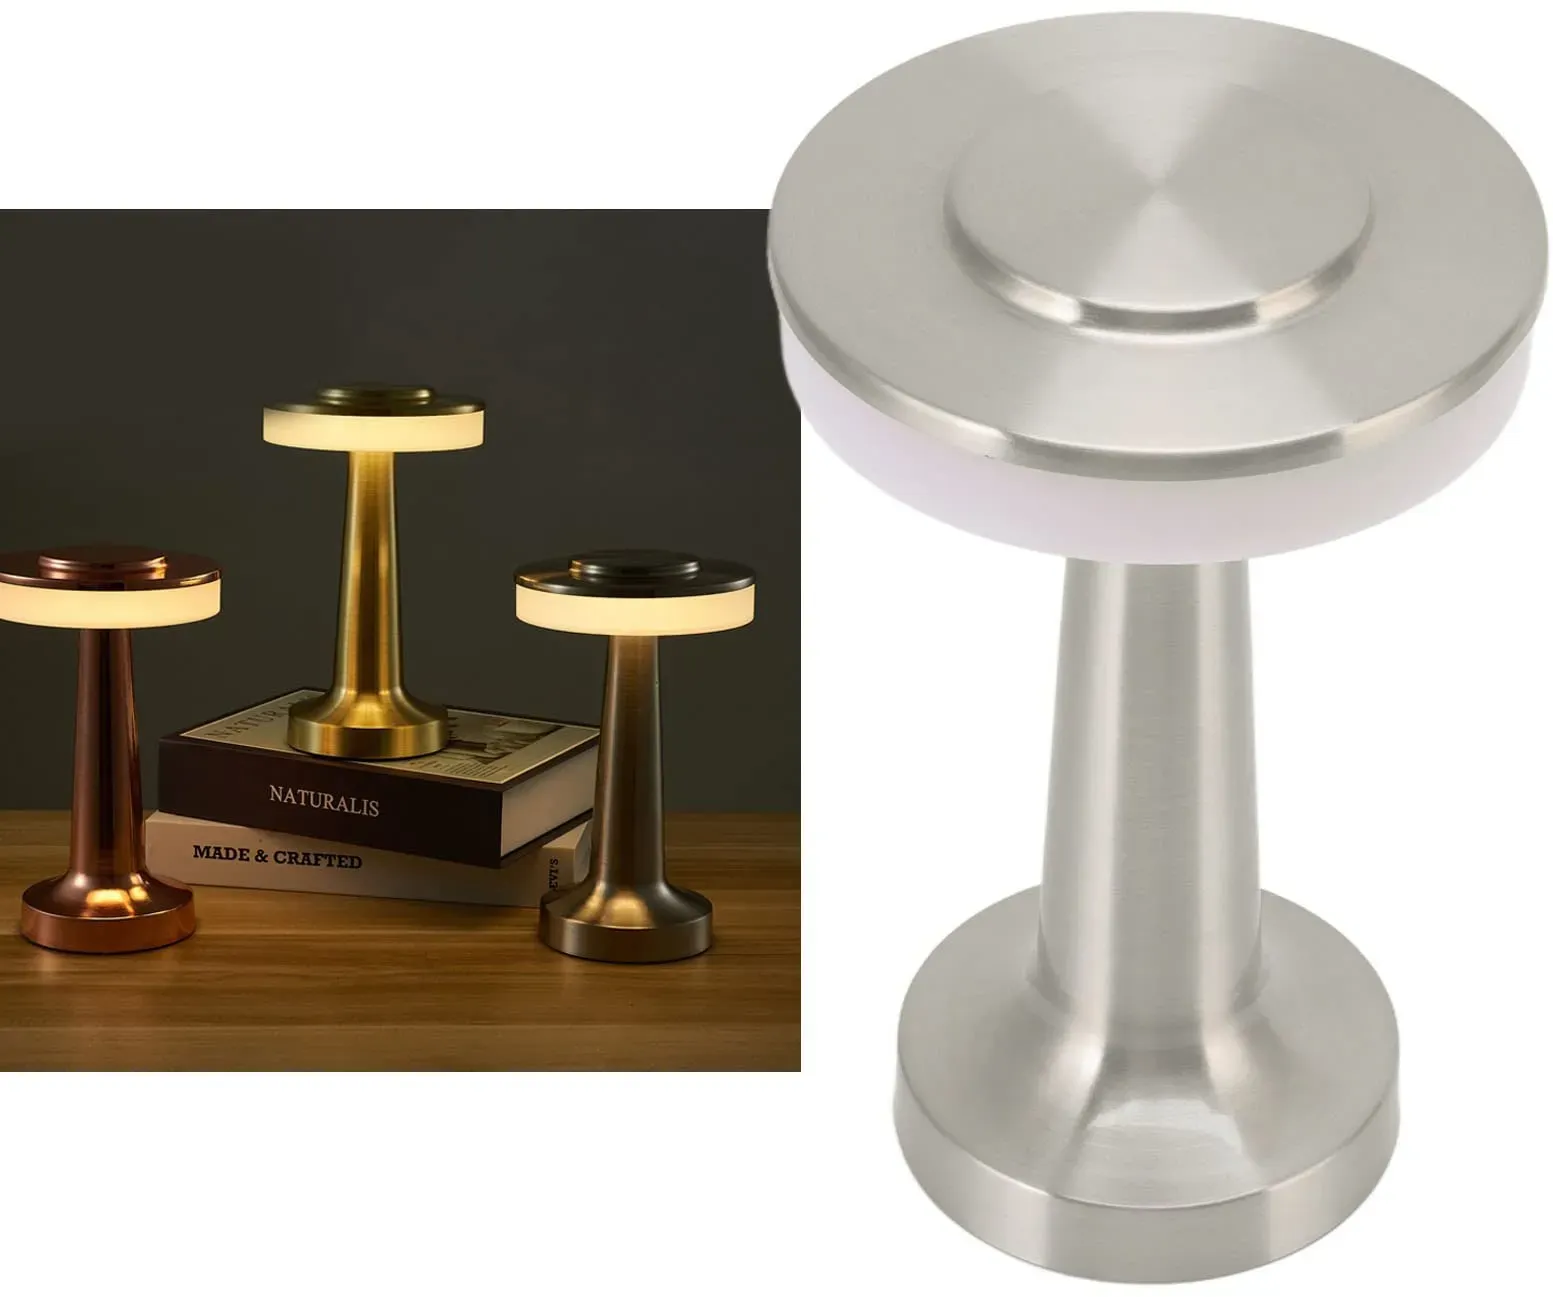 Touch-LED-Tischlampe, Tragbare LED-Tischlampe, Retro-Touch-Steuerung, 3 Stufen, Farbtemperatur, Wiederaufladbare Tischlampe, Nachtlicht FüR Hotel (Silber)